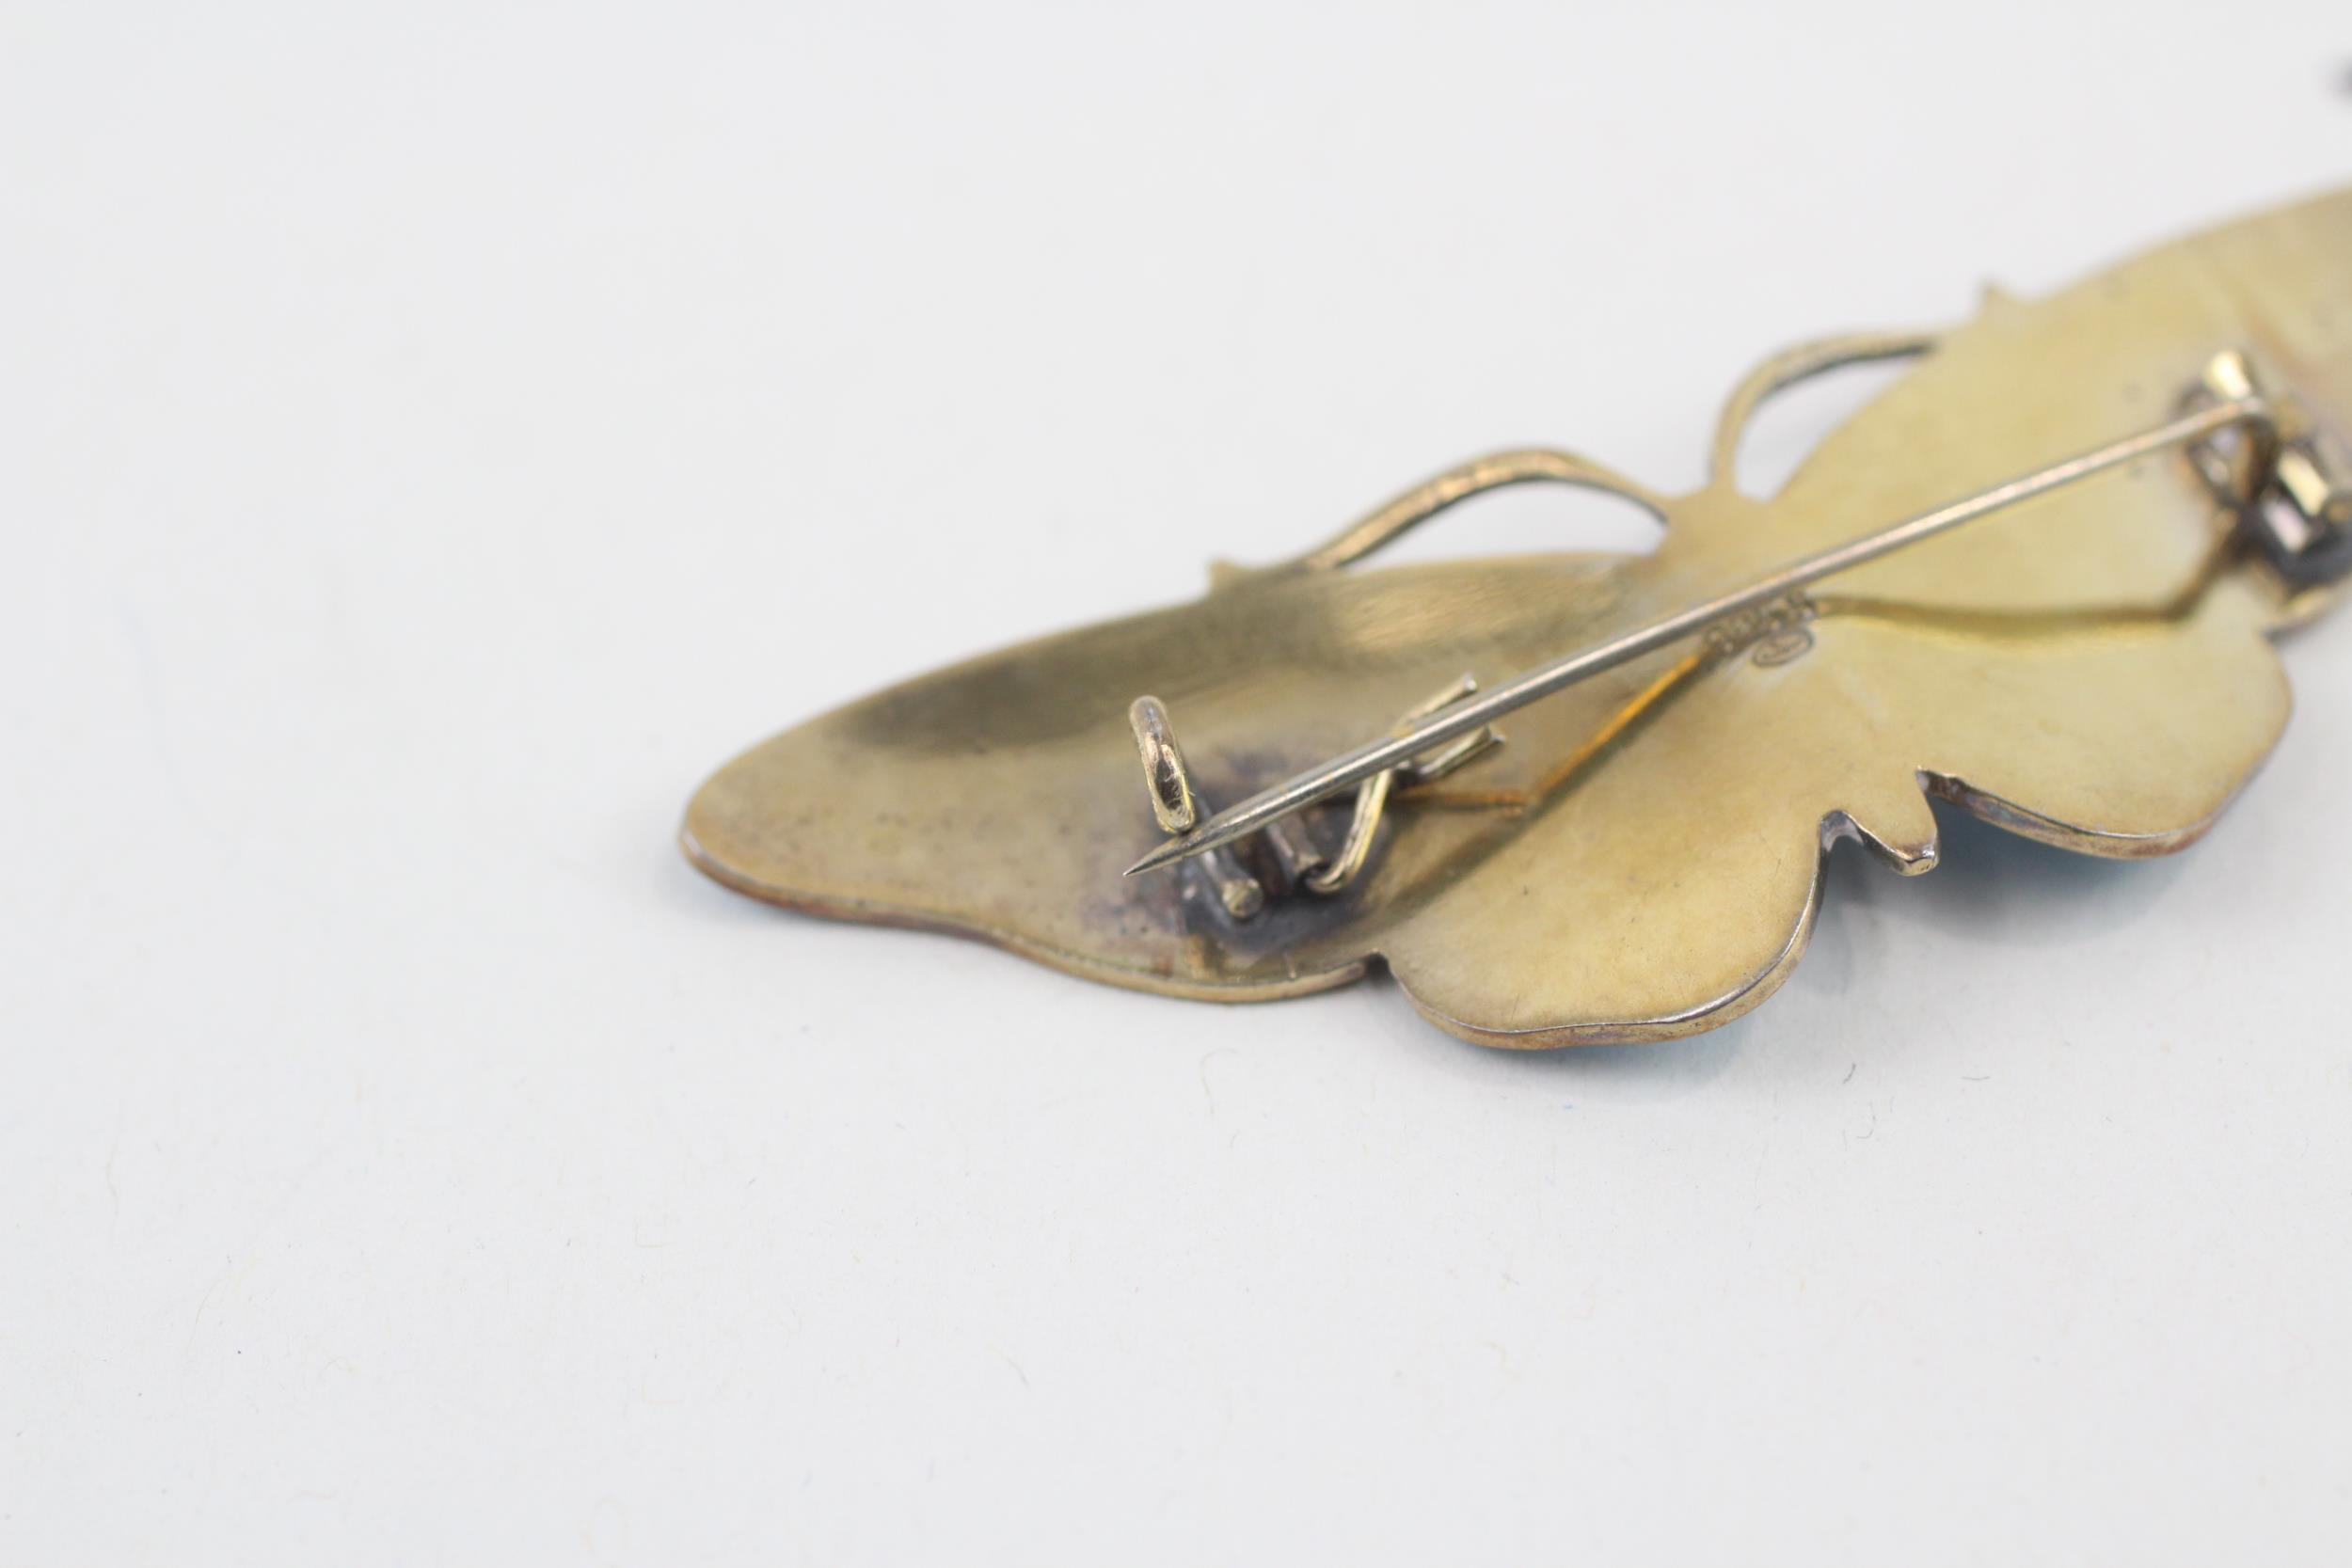 Silver enamel butterfly brooch by Gustav Hellstrom (13g) - Image 10 of 13